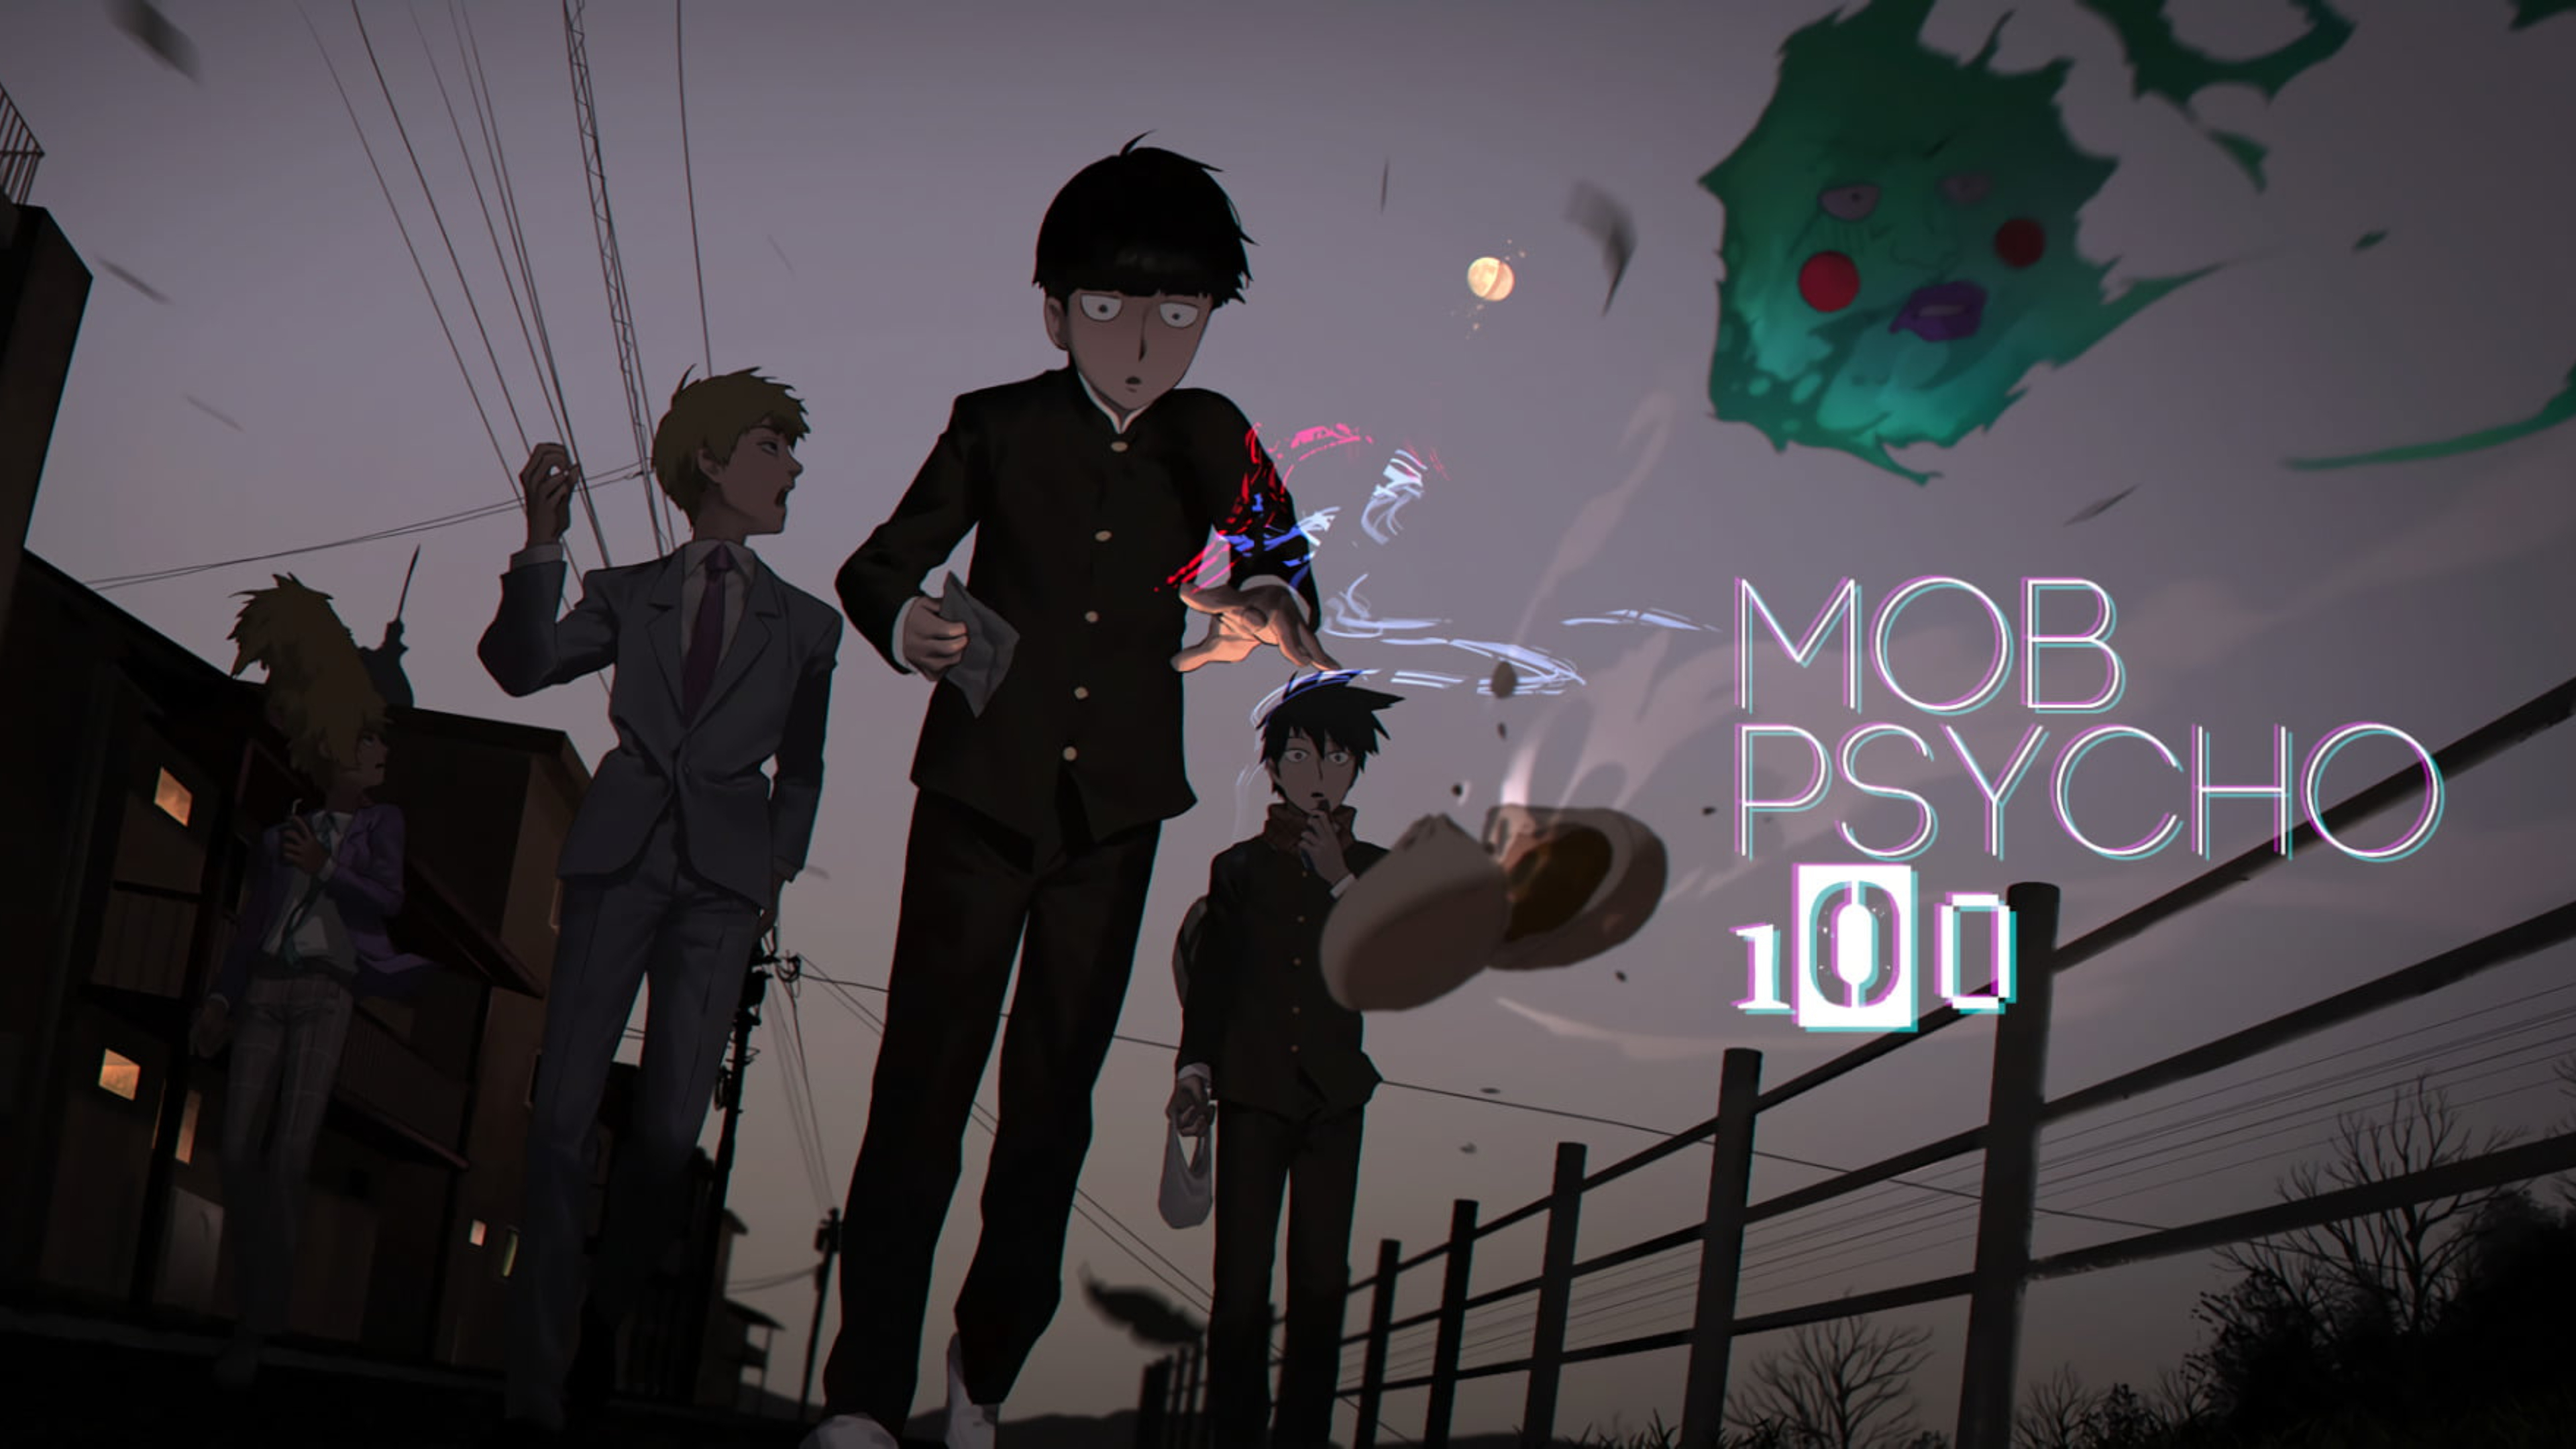 Mob Psycho 100 Wallpaper